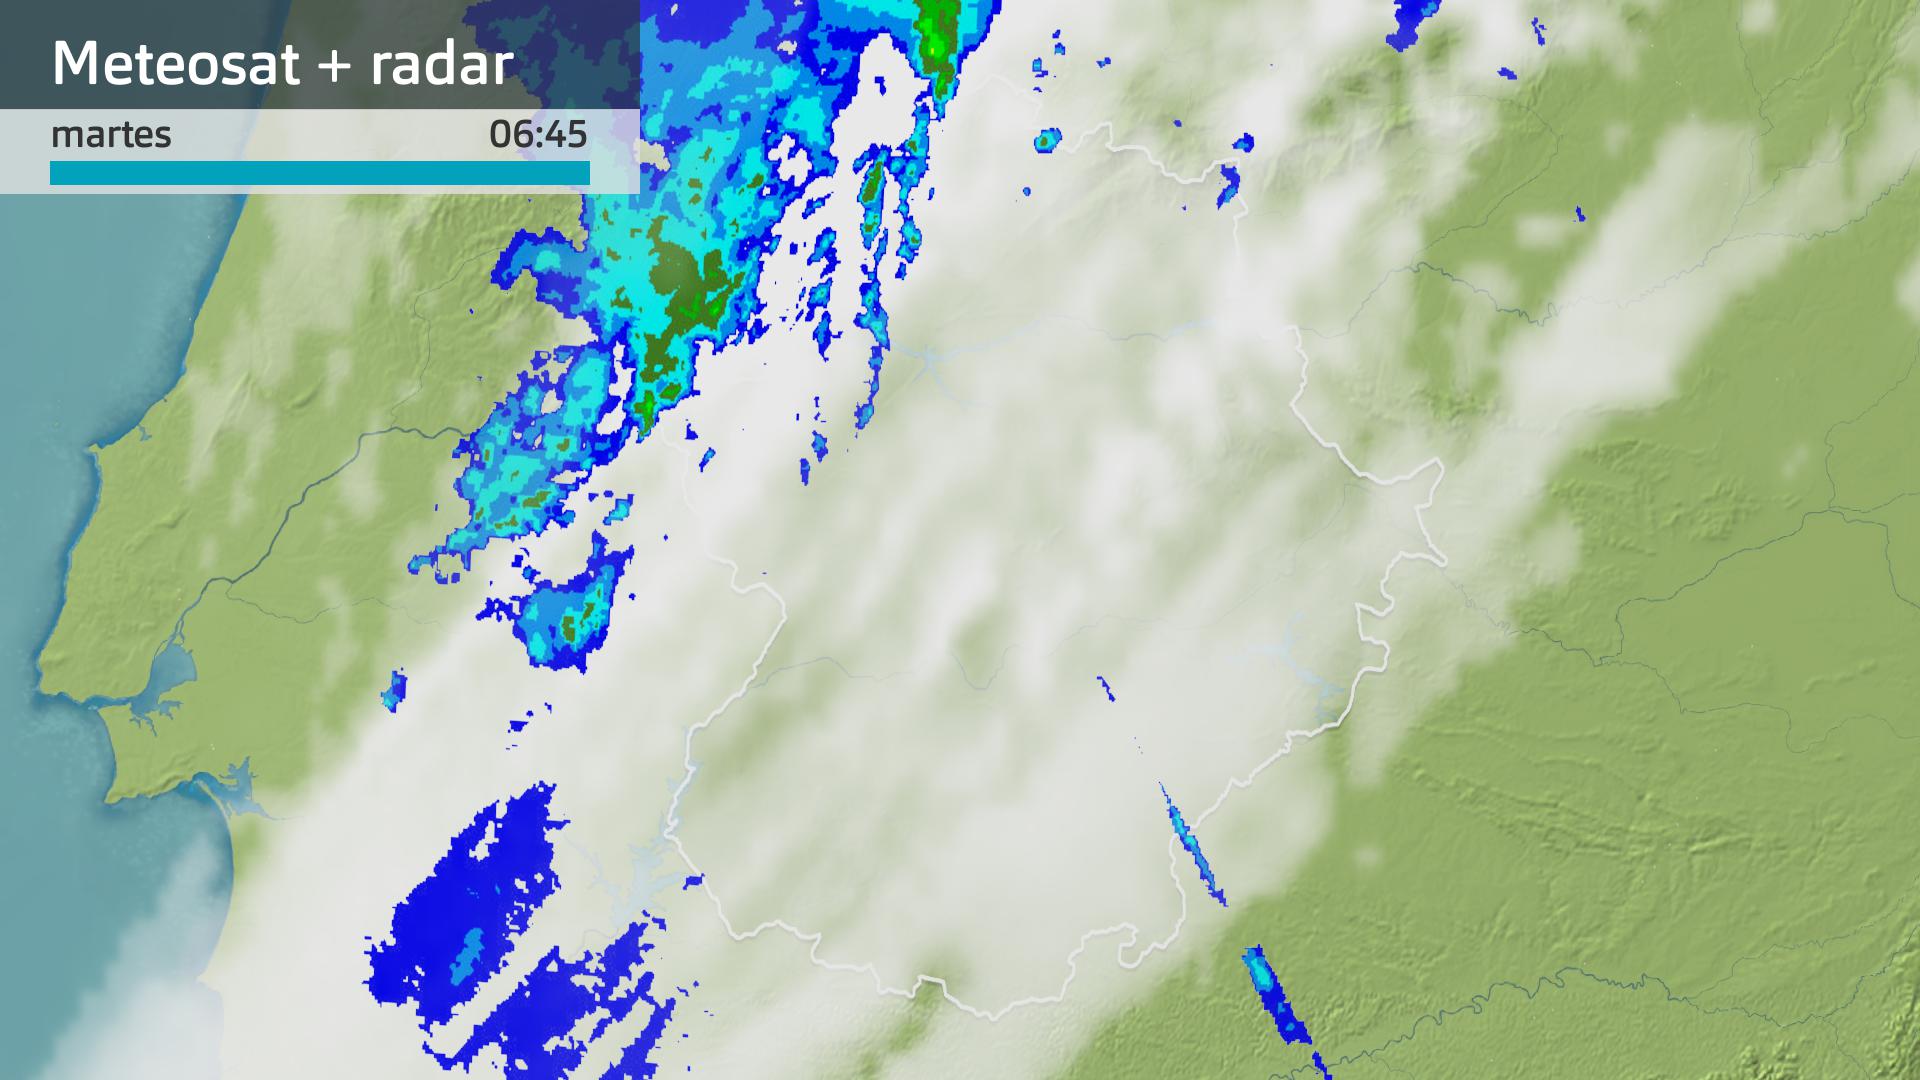 Imagen del Meteosat + radar meteorológico martes 18 de junio 6:45 h.